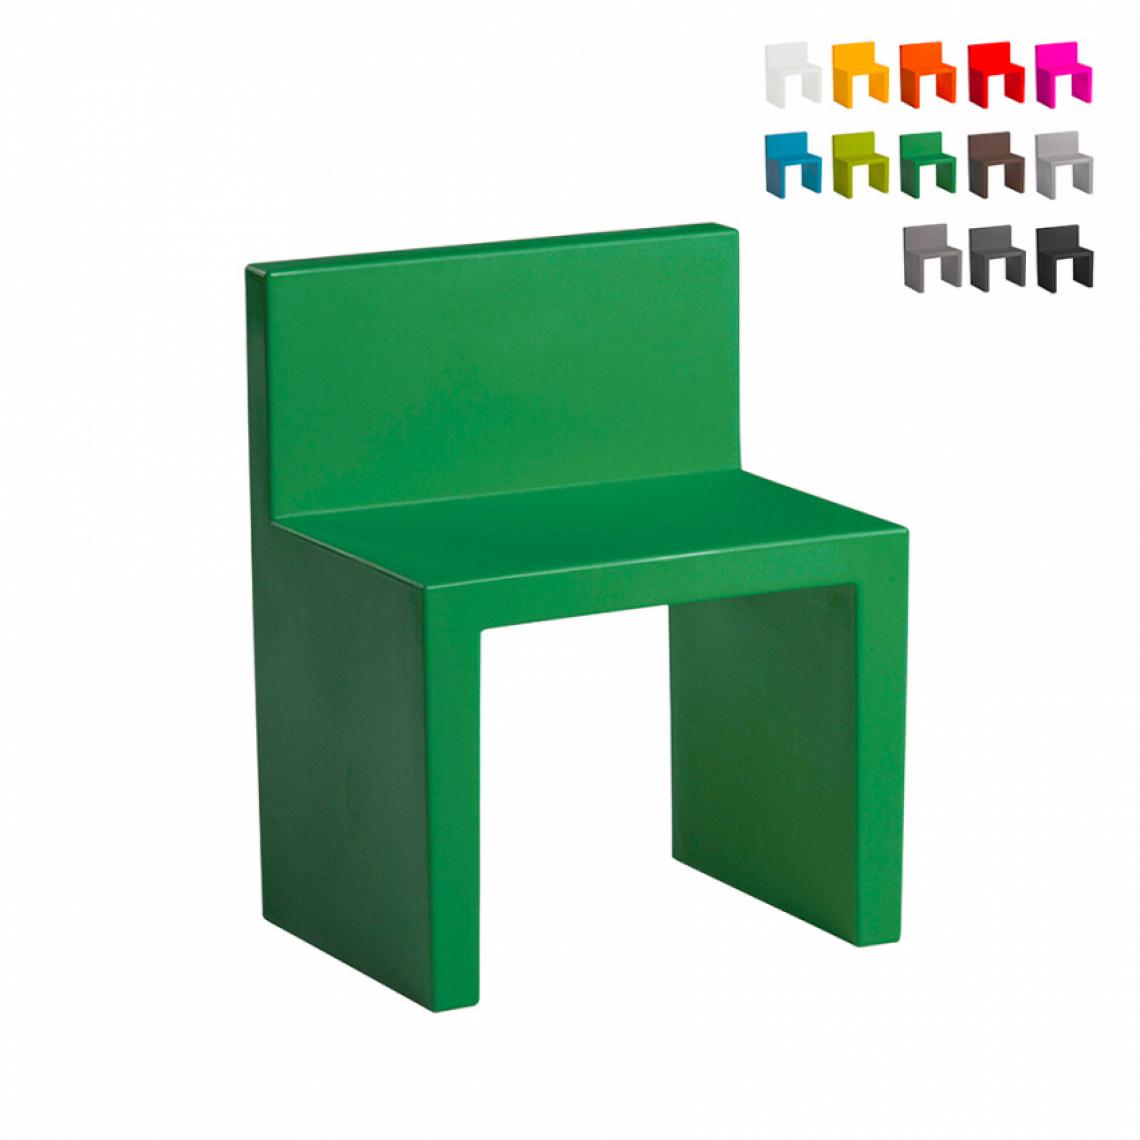 Slide - Chaise au design moderne Slide Angolo Retto pour la maison et le jardin, Couleur: Vert - Chaises